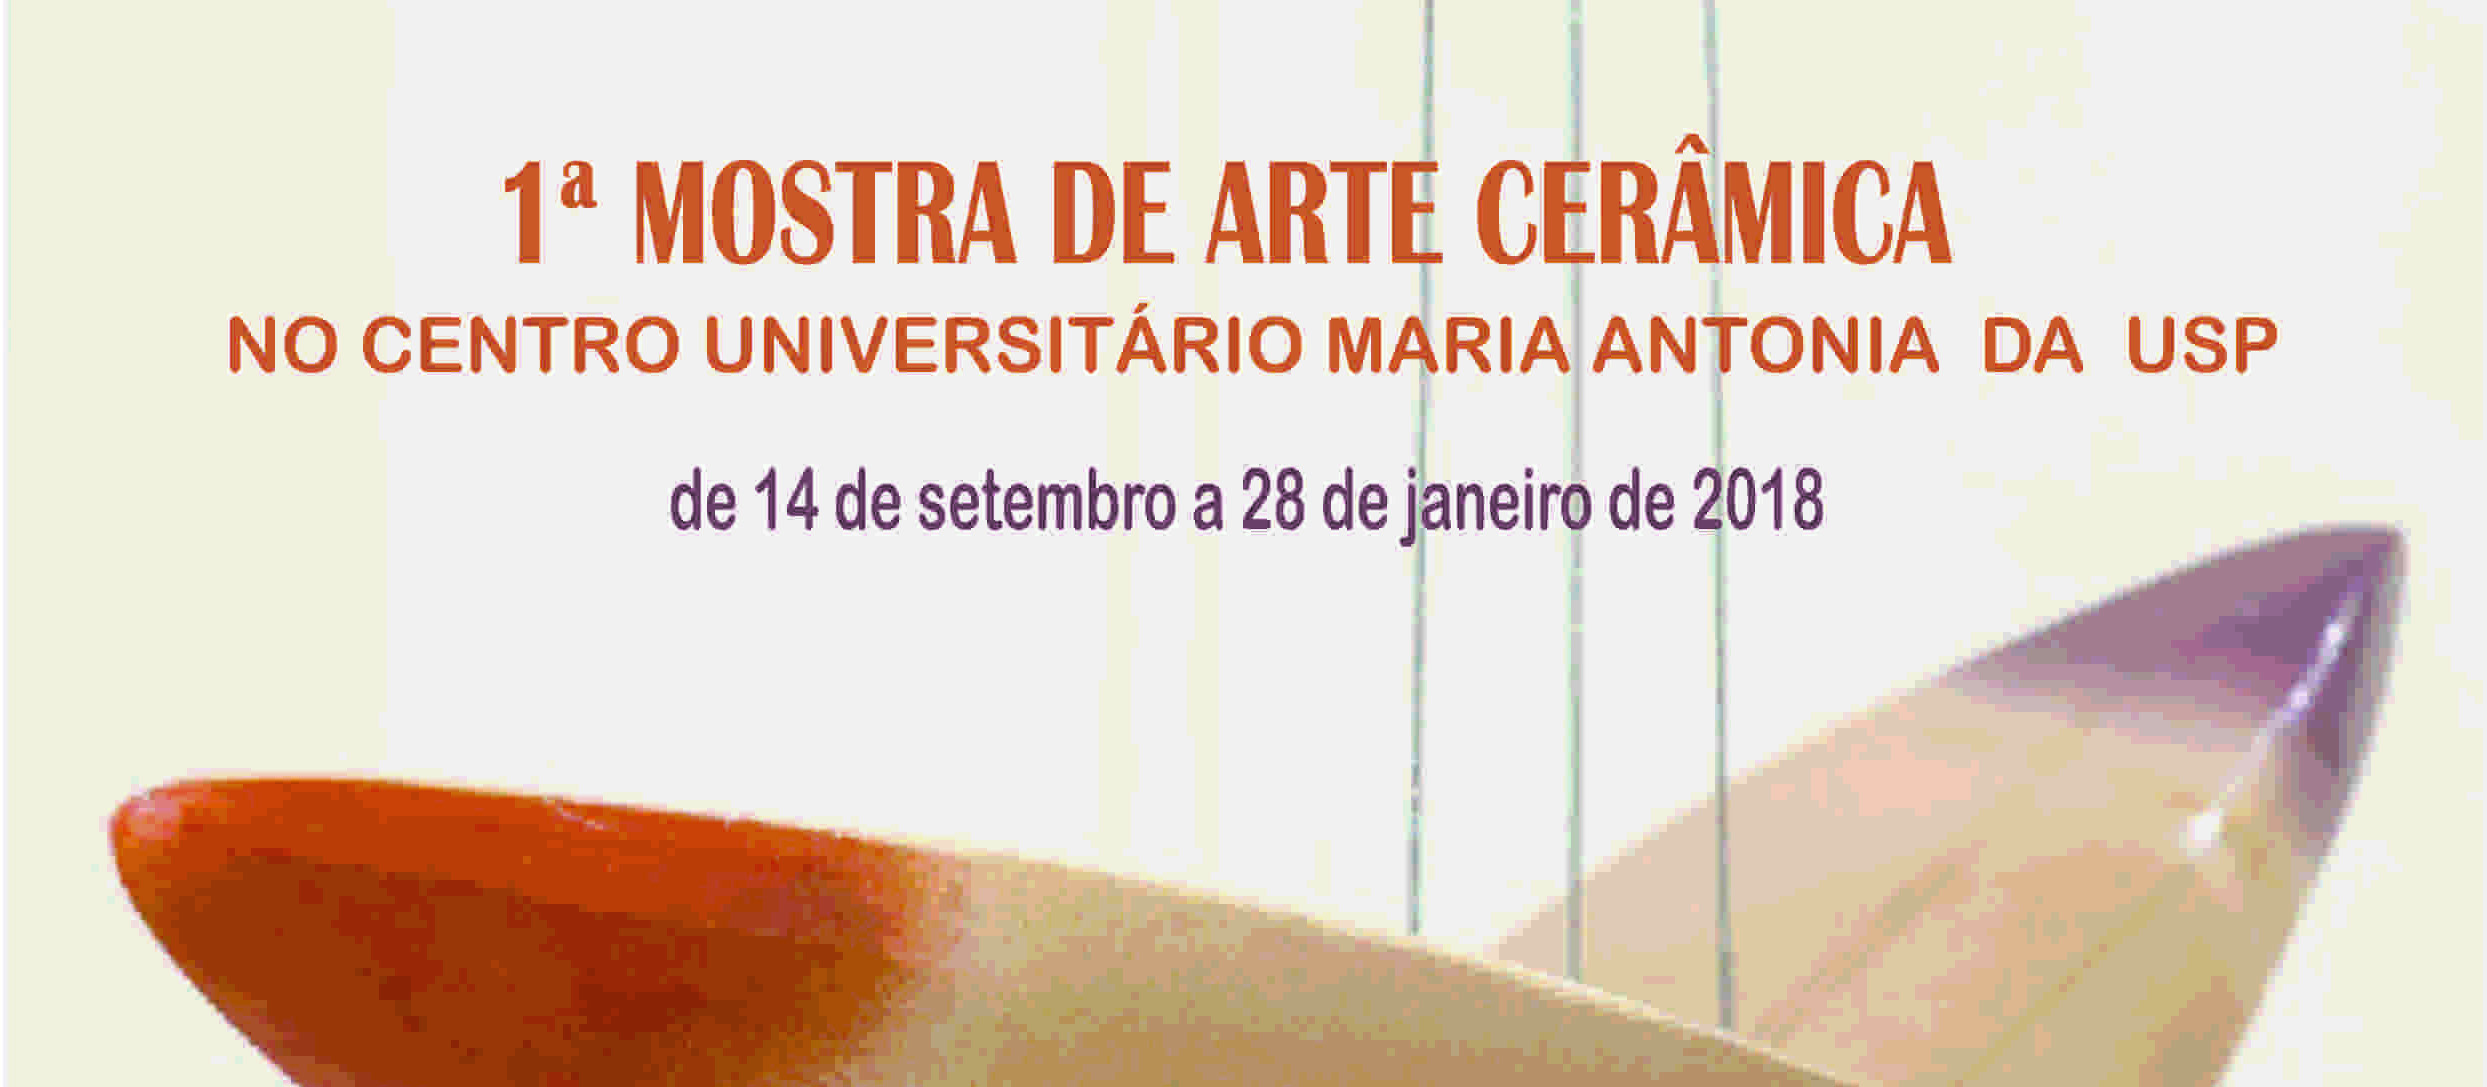 (Português) Exposição gratuita reúne obras de arte cerâmica no centro de São Paulo